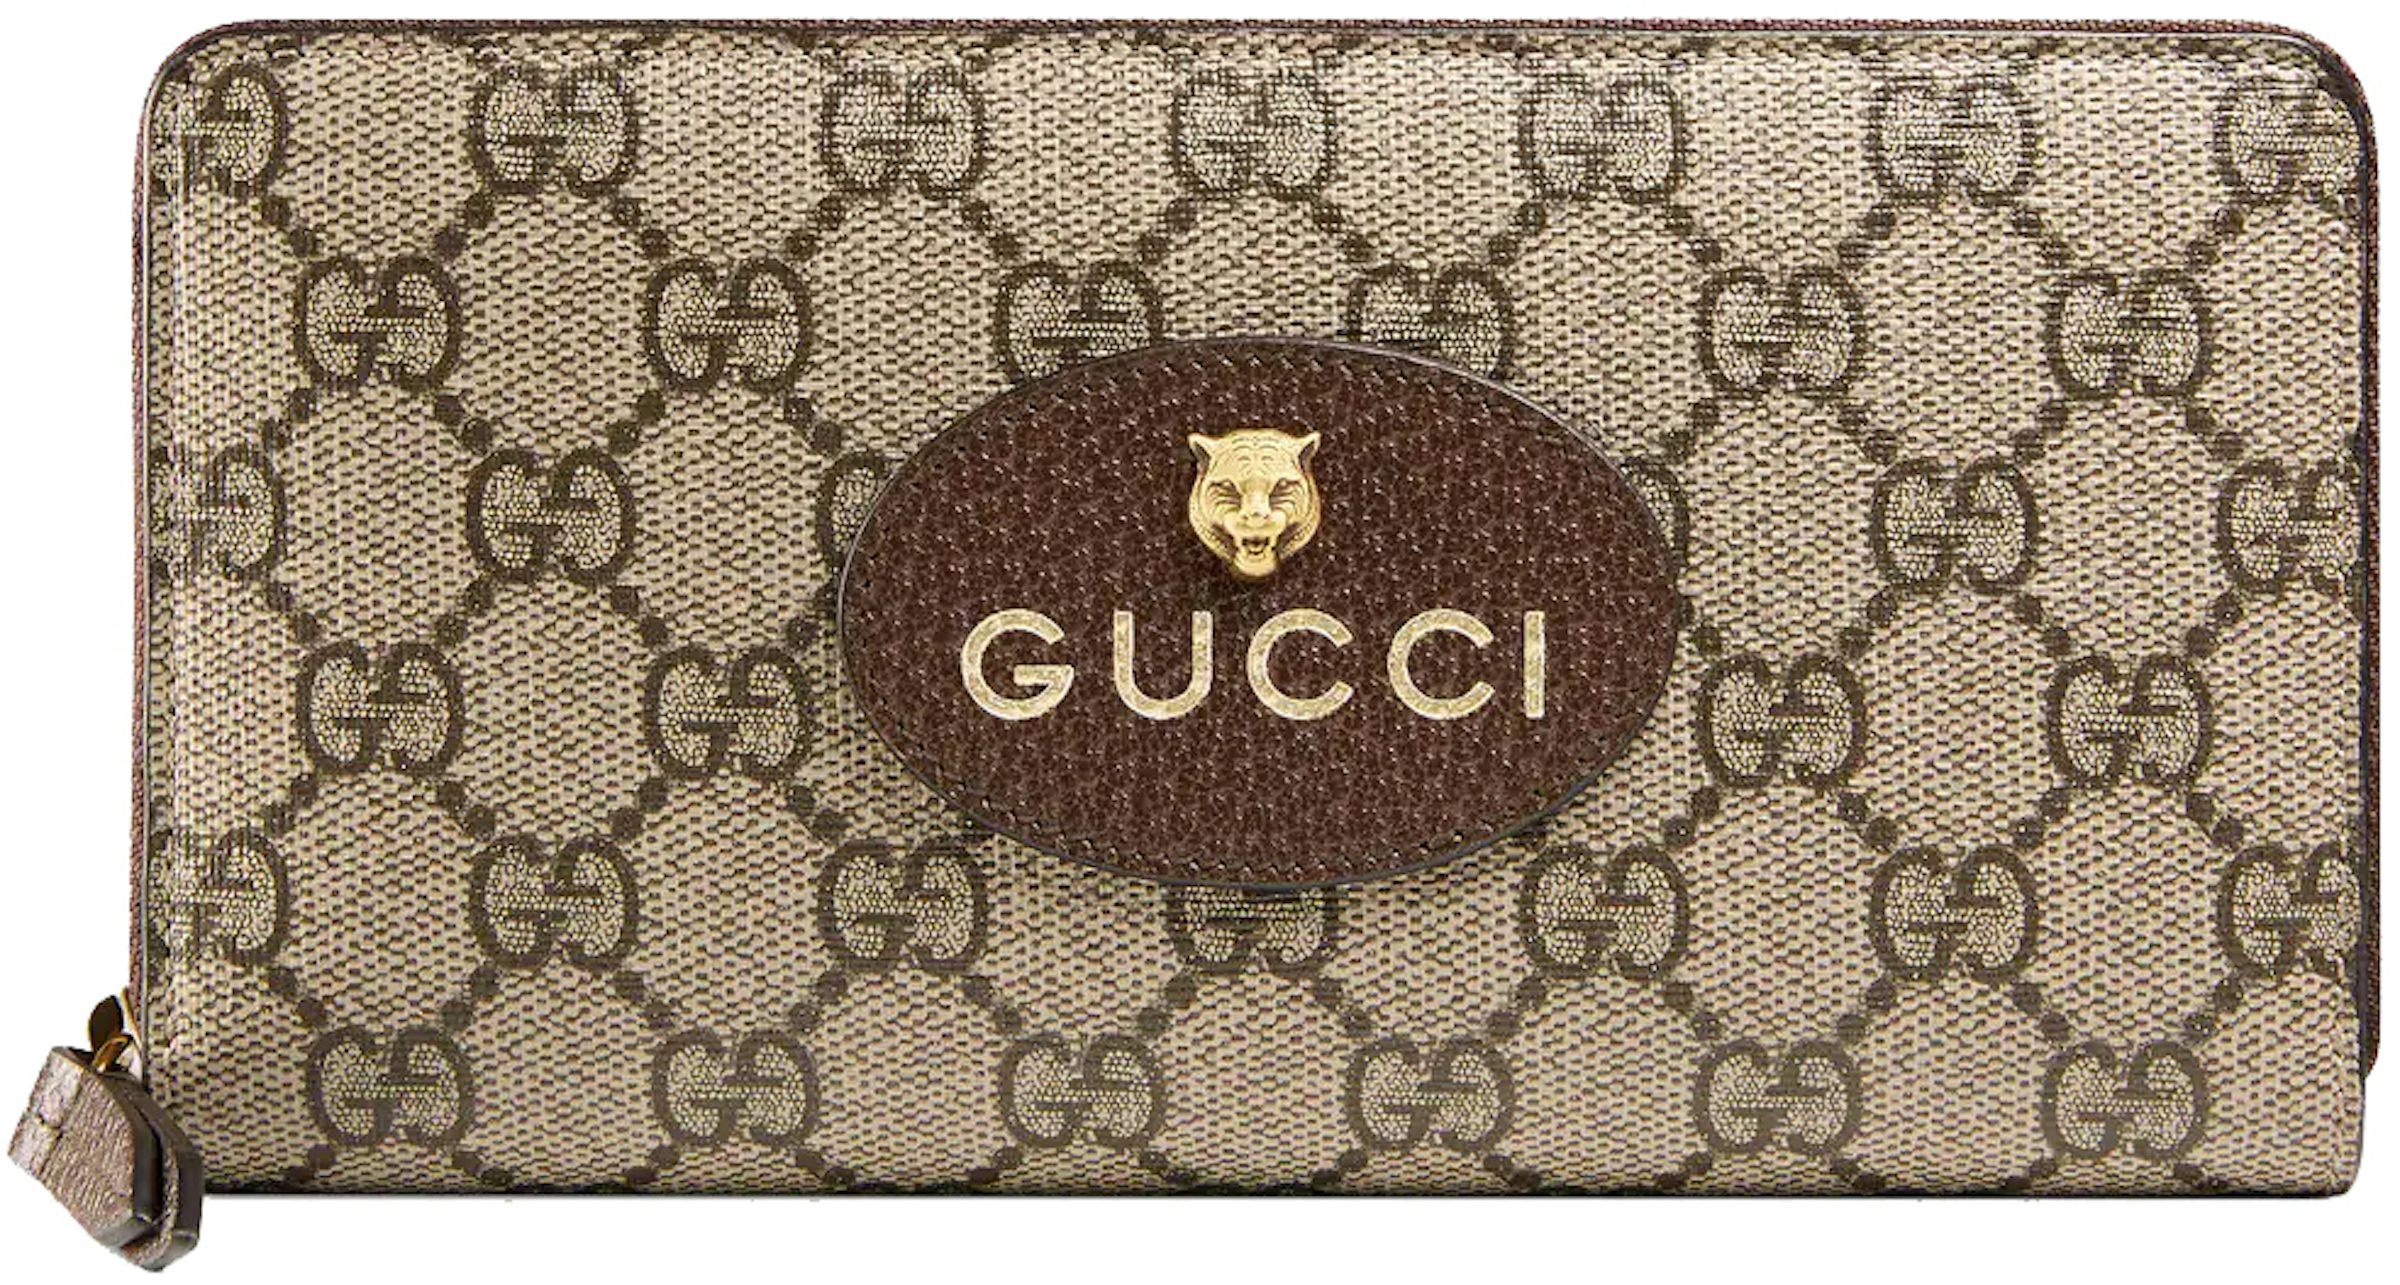 Gucci Long Wallet - GG Supreme Brown/White